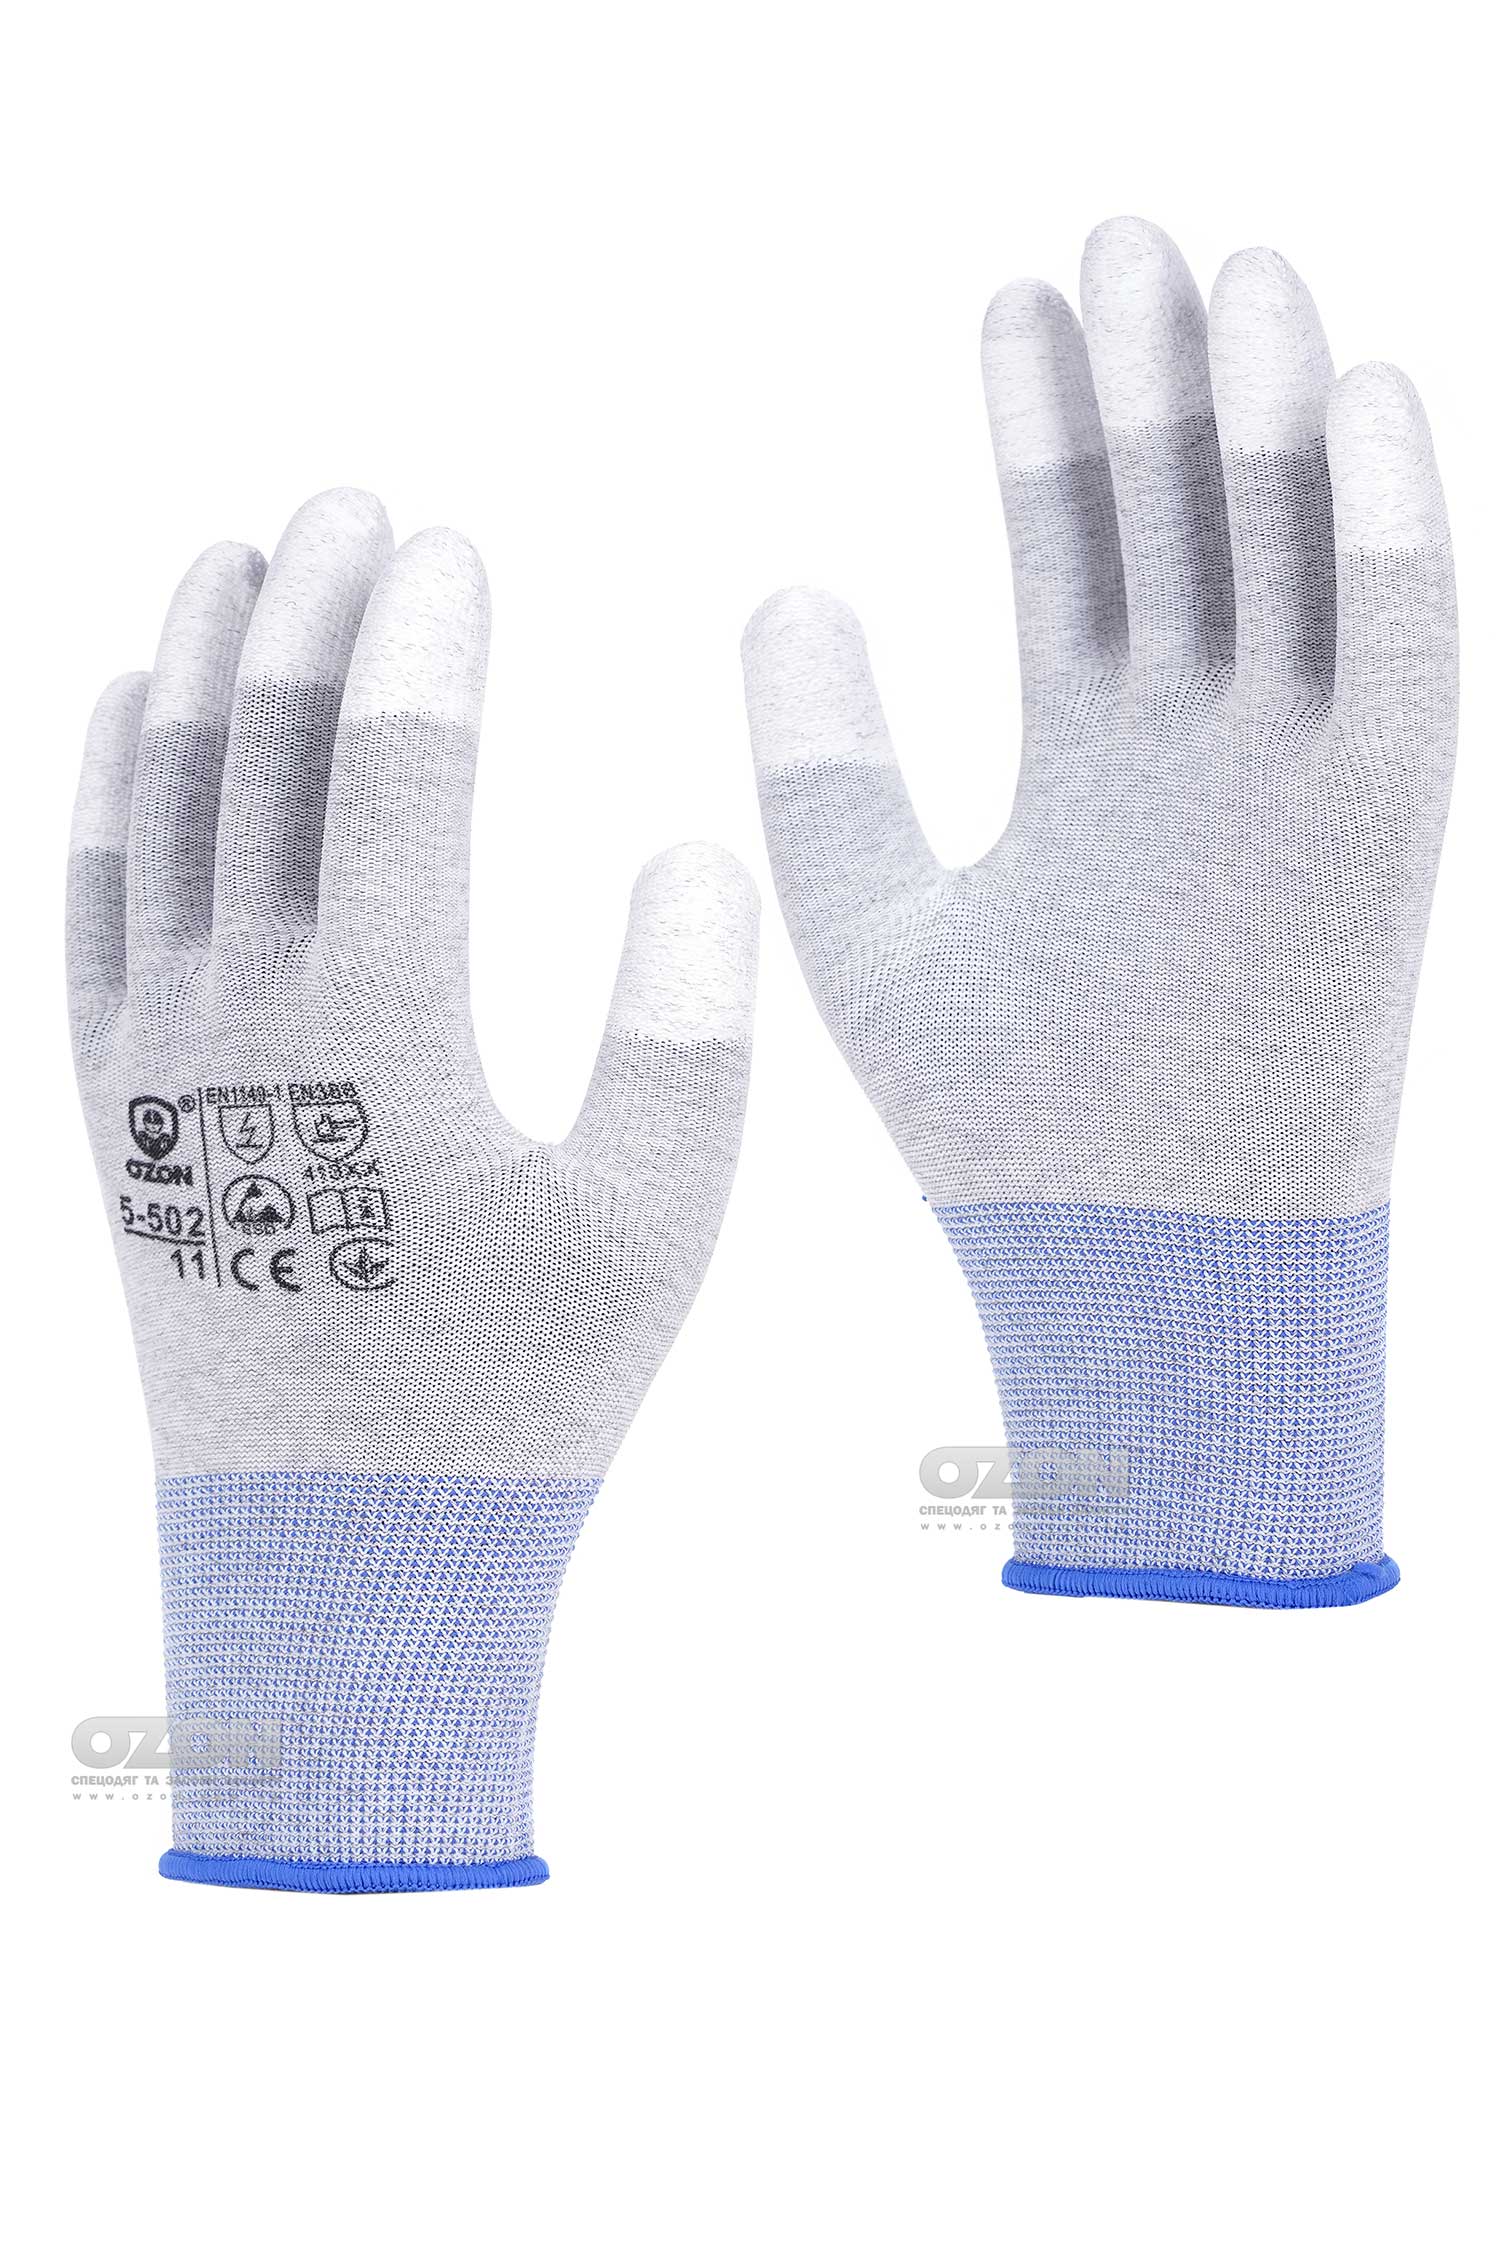 Антистатичні рукавички OZON 5-502 з покриттям кінчиків пальців, сірі - Фото 1